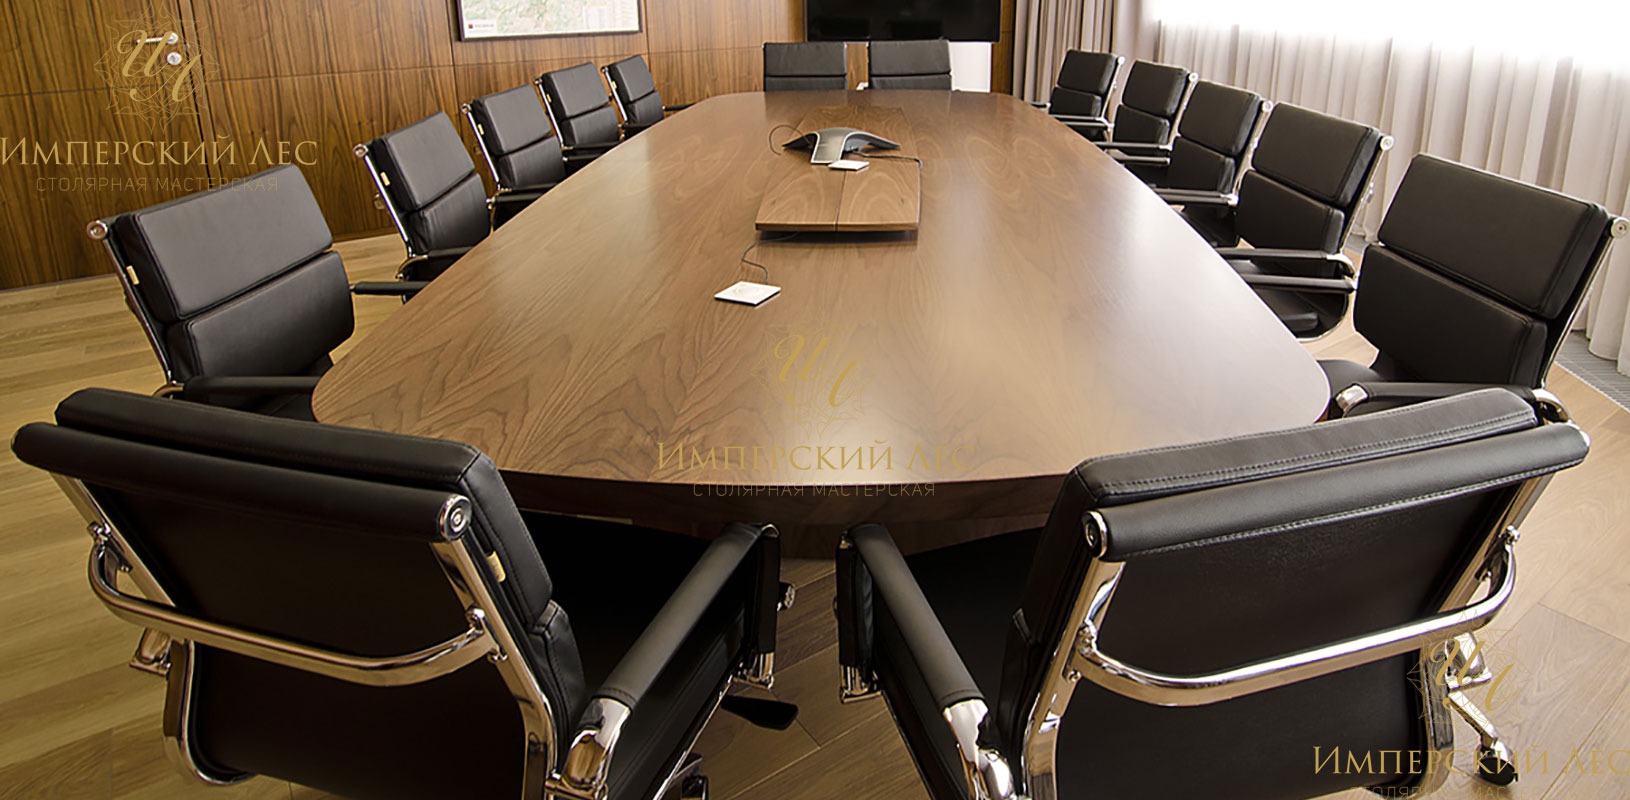 Столы для совещаний и переговоров